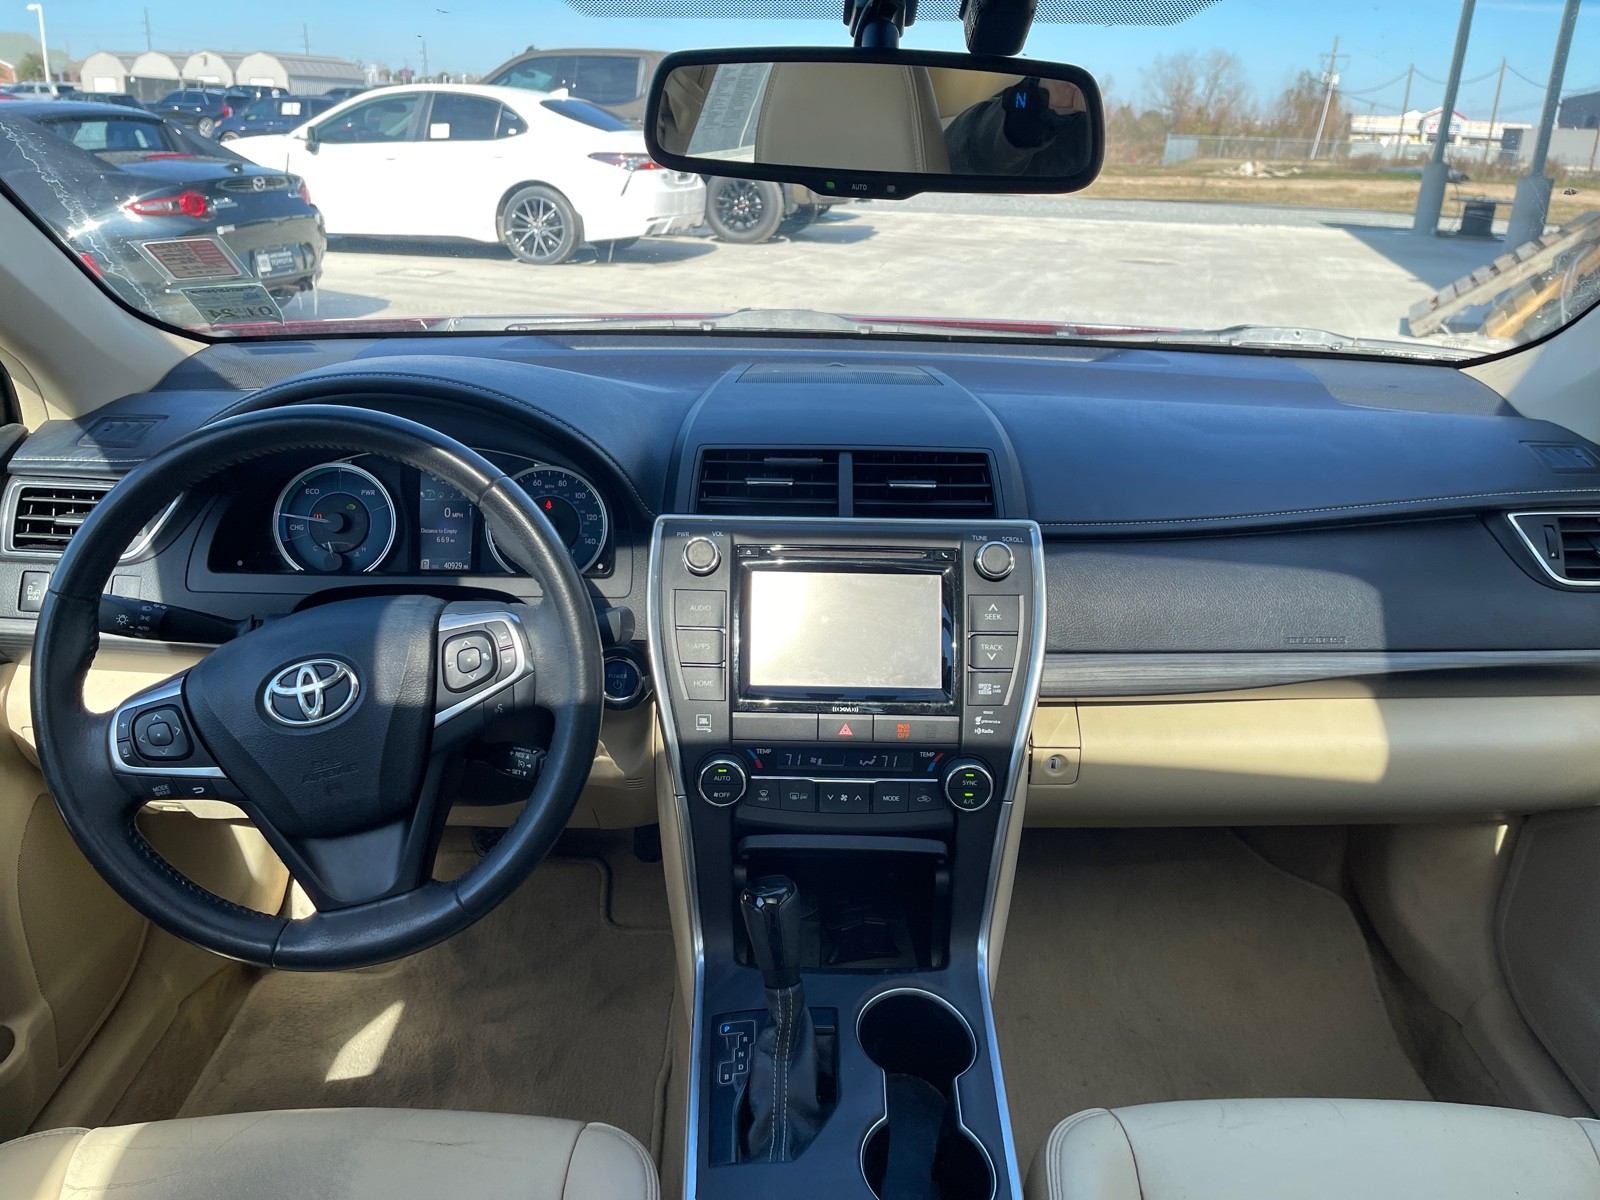 Used 2016 Toyota Camry Hybrid Sedan